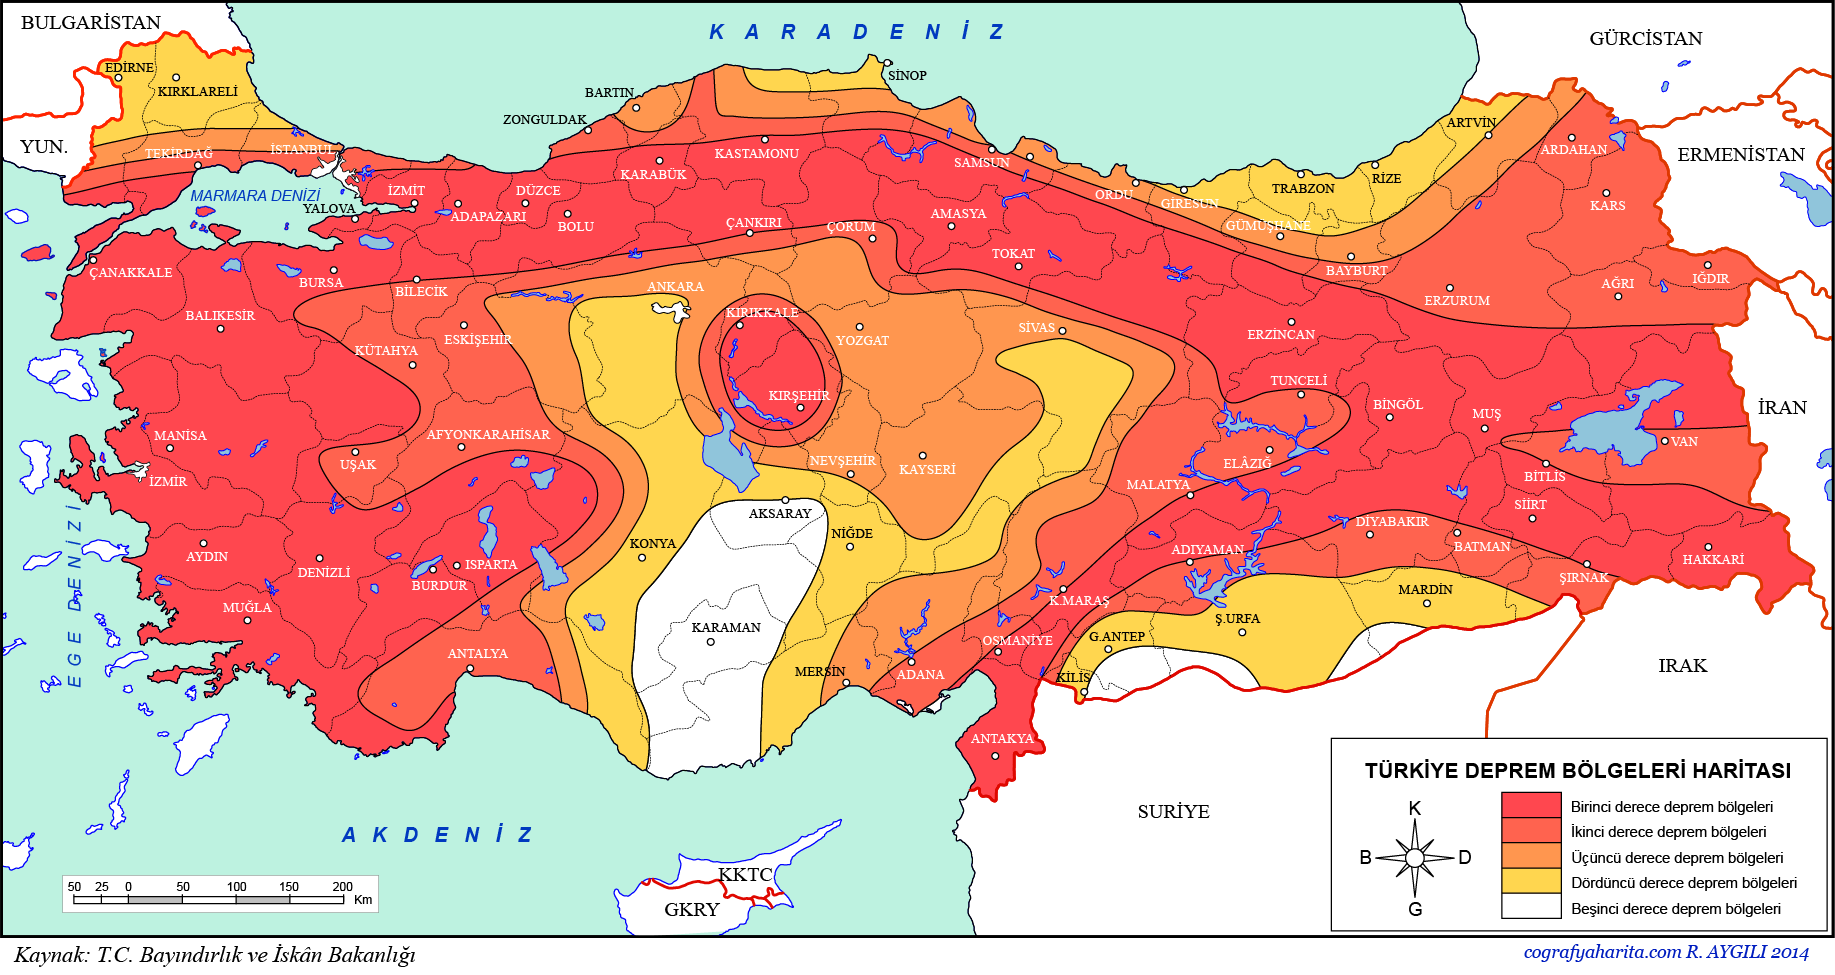 turkiye deprem haritasi deprem bolgeleri nerelerdir 1 2 3 4 ve 5 derece deprem bolgeleri